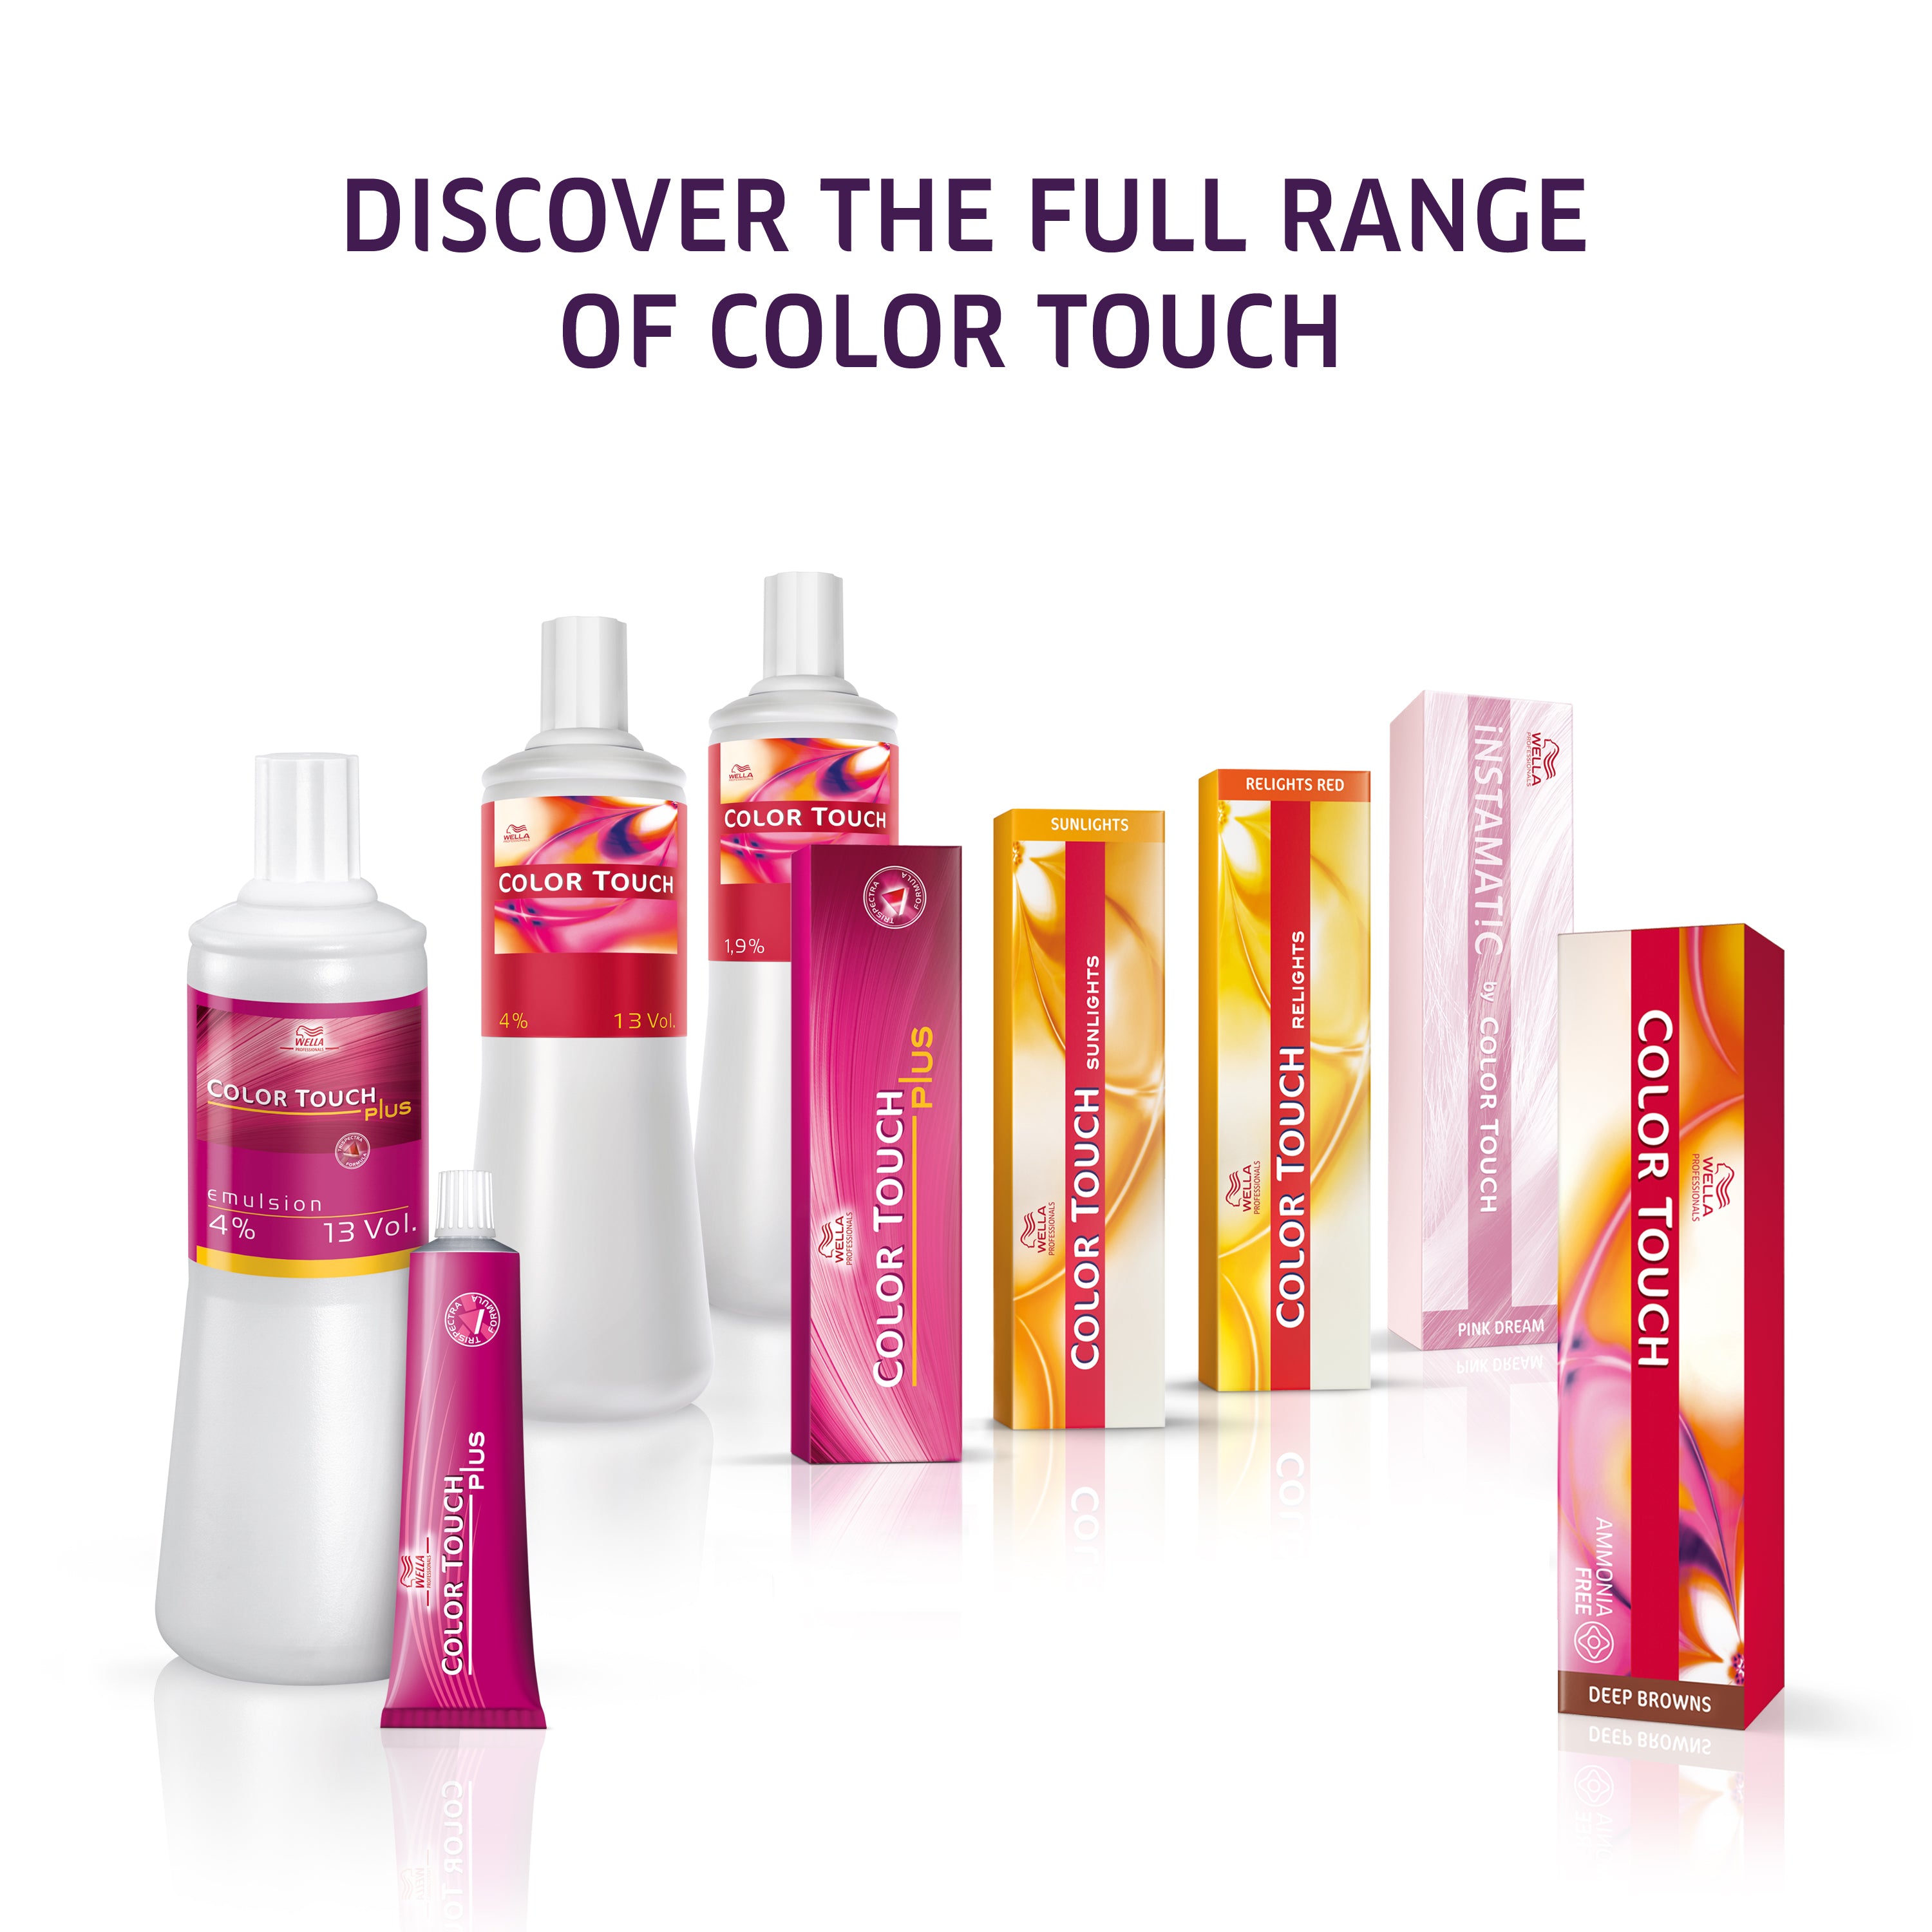 Wella Professional Color Touch Rich Naturals 9/36 Lyseblond gylden-violett